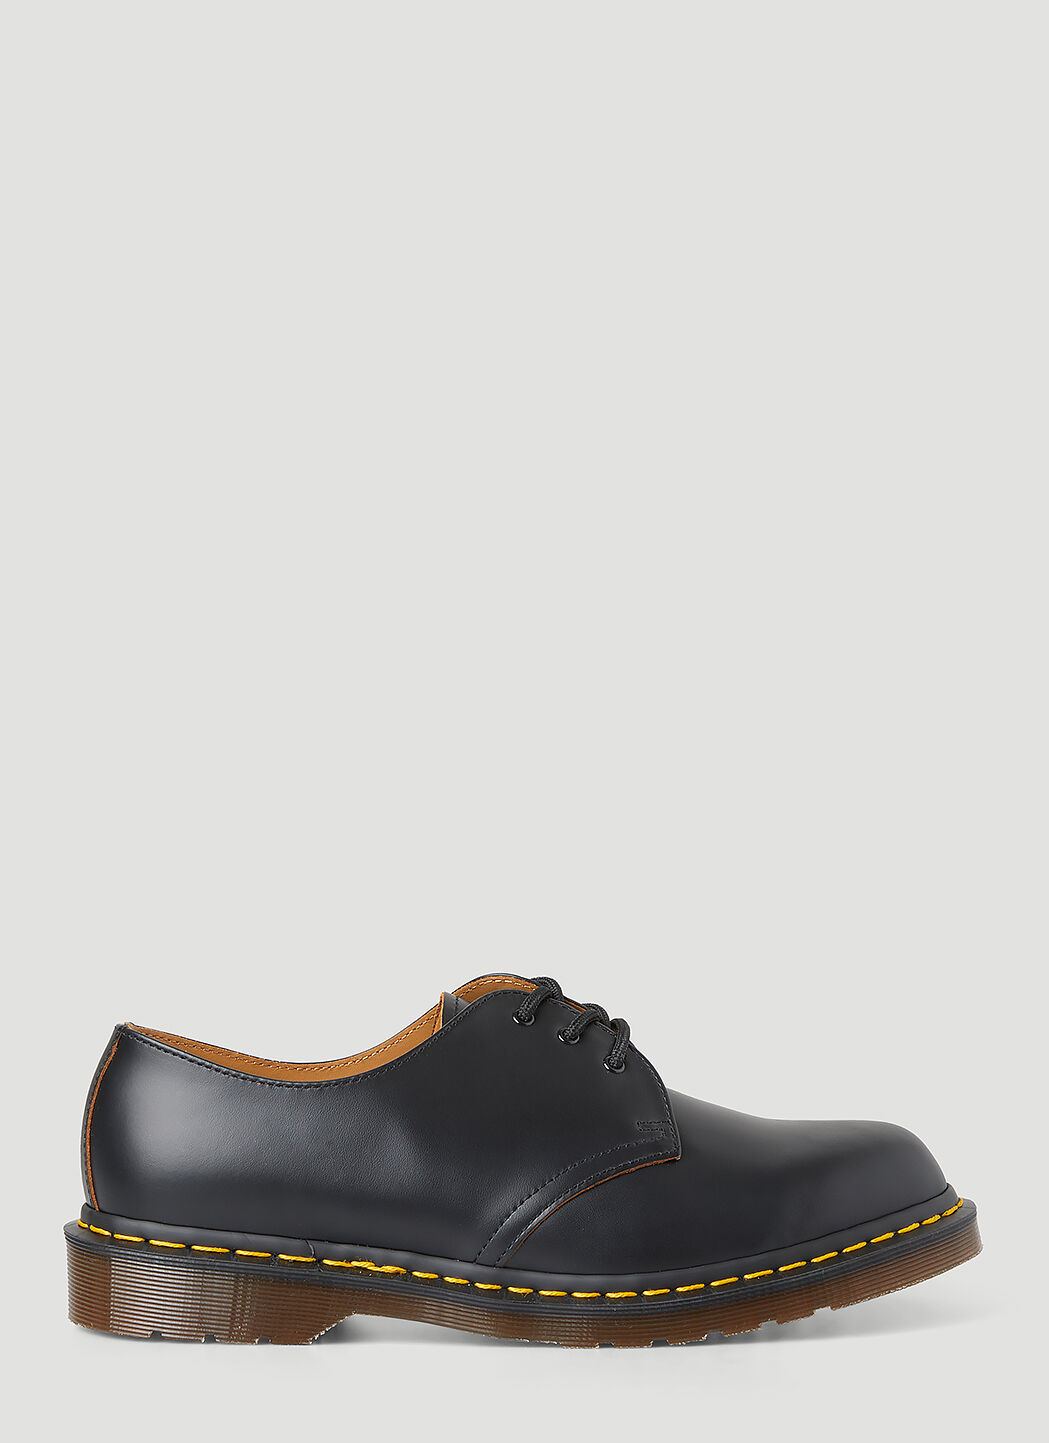 Gucci Vintage 1461 Tech Shoes Black guc0255064